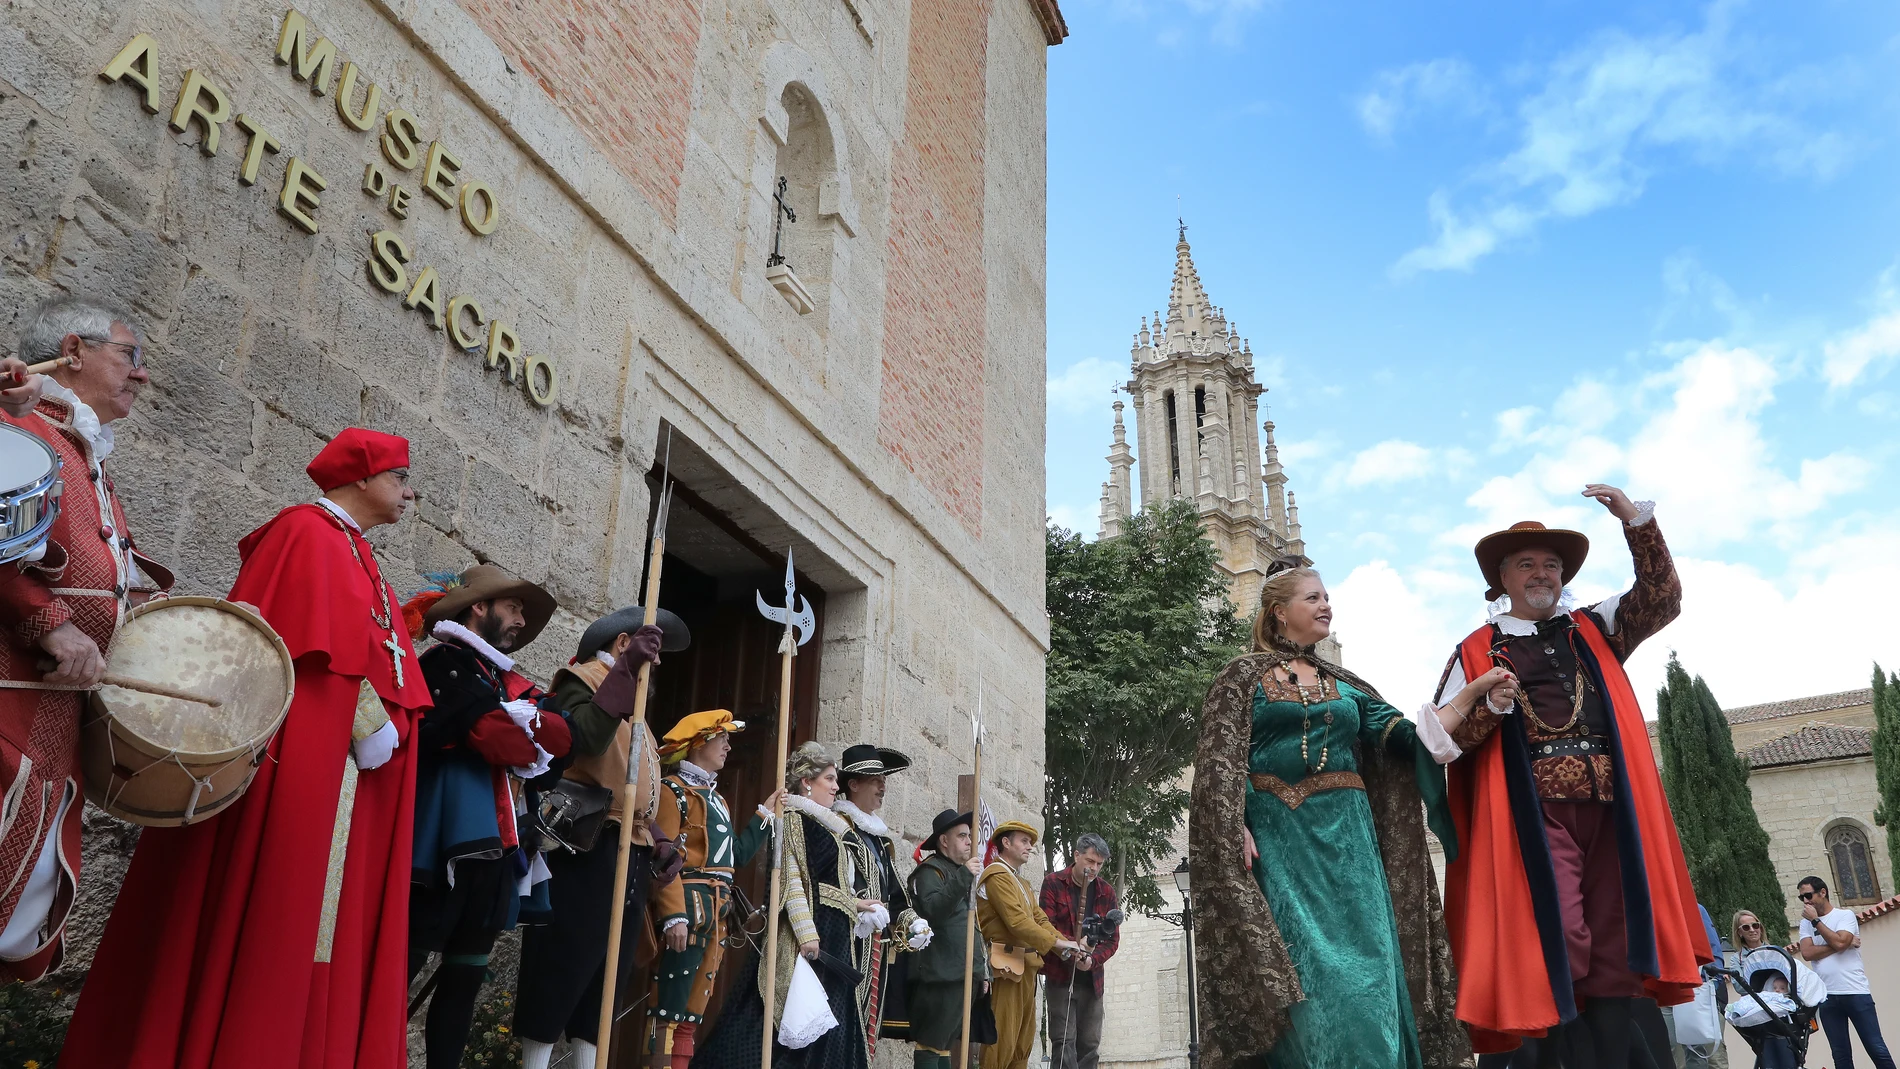 La localidad palentina y su castillo se convierten en ejes históricos tras la firma del traspaso de Valladolid a Madrid de la capital del reino y en la concesión del mercado franco